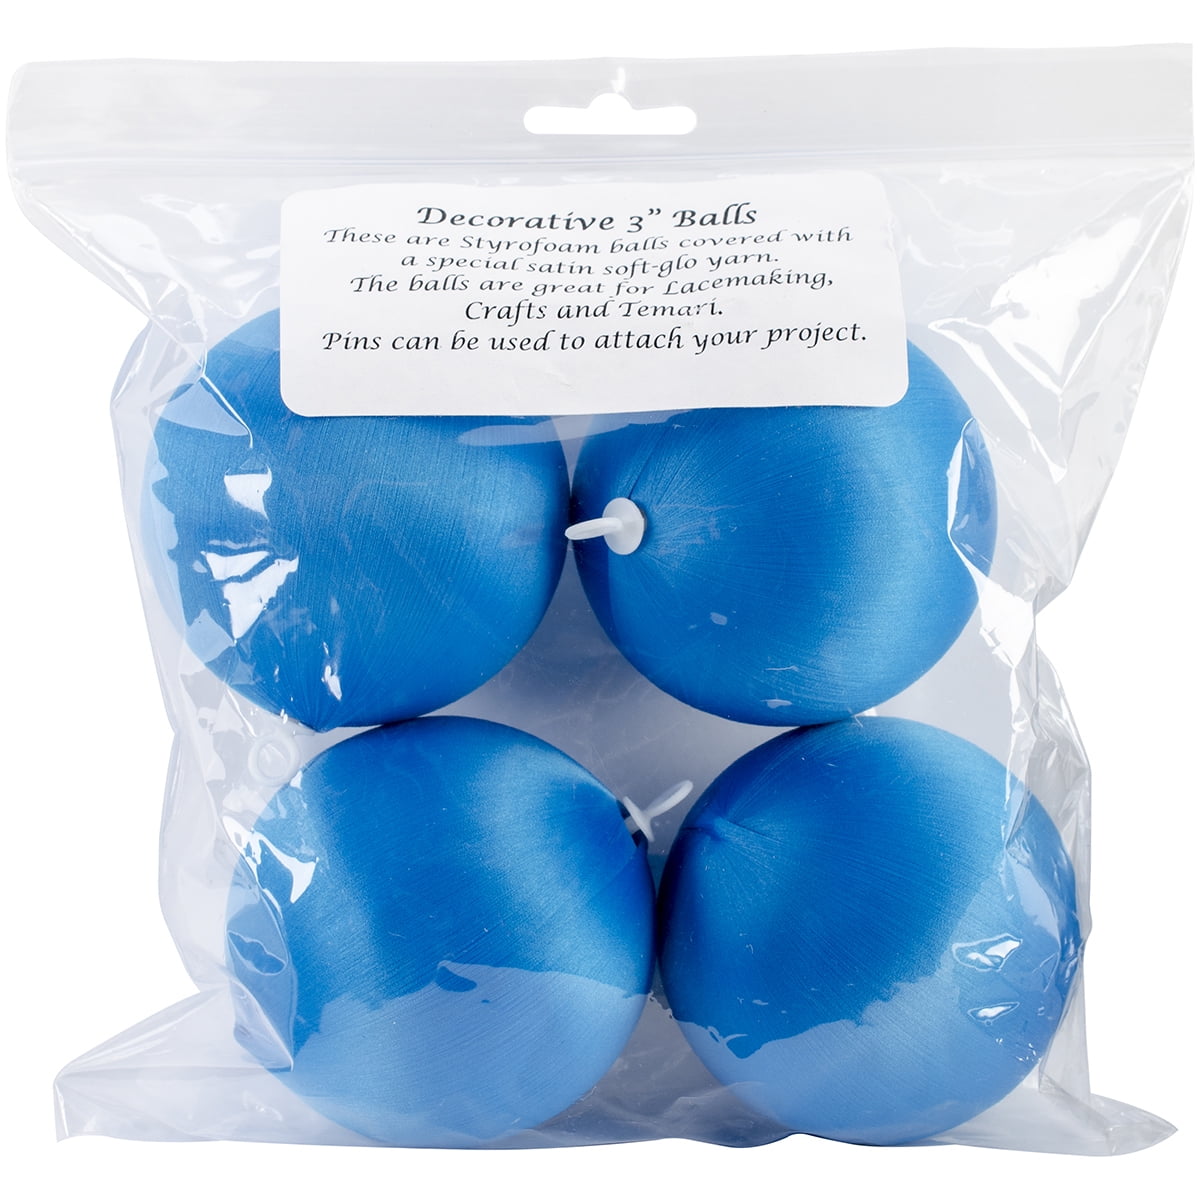 Handy Hands Decor Satin Covered Styrofoam Balls 3 4/Pkg-Turquoise